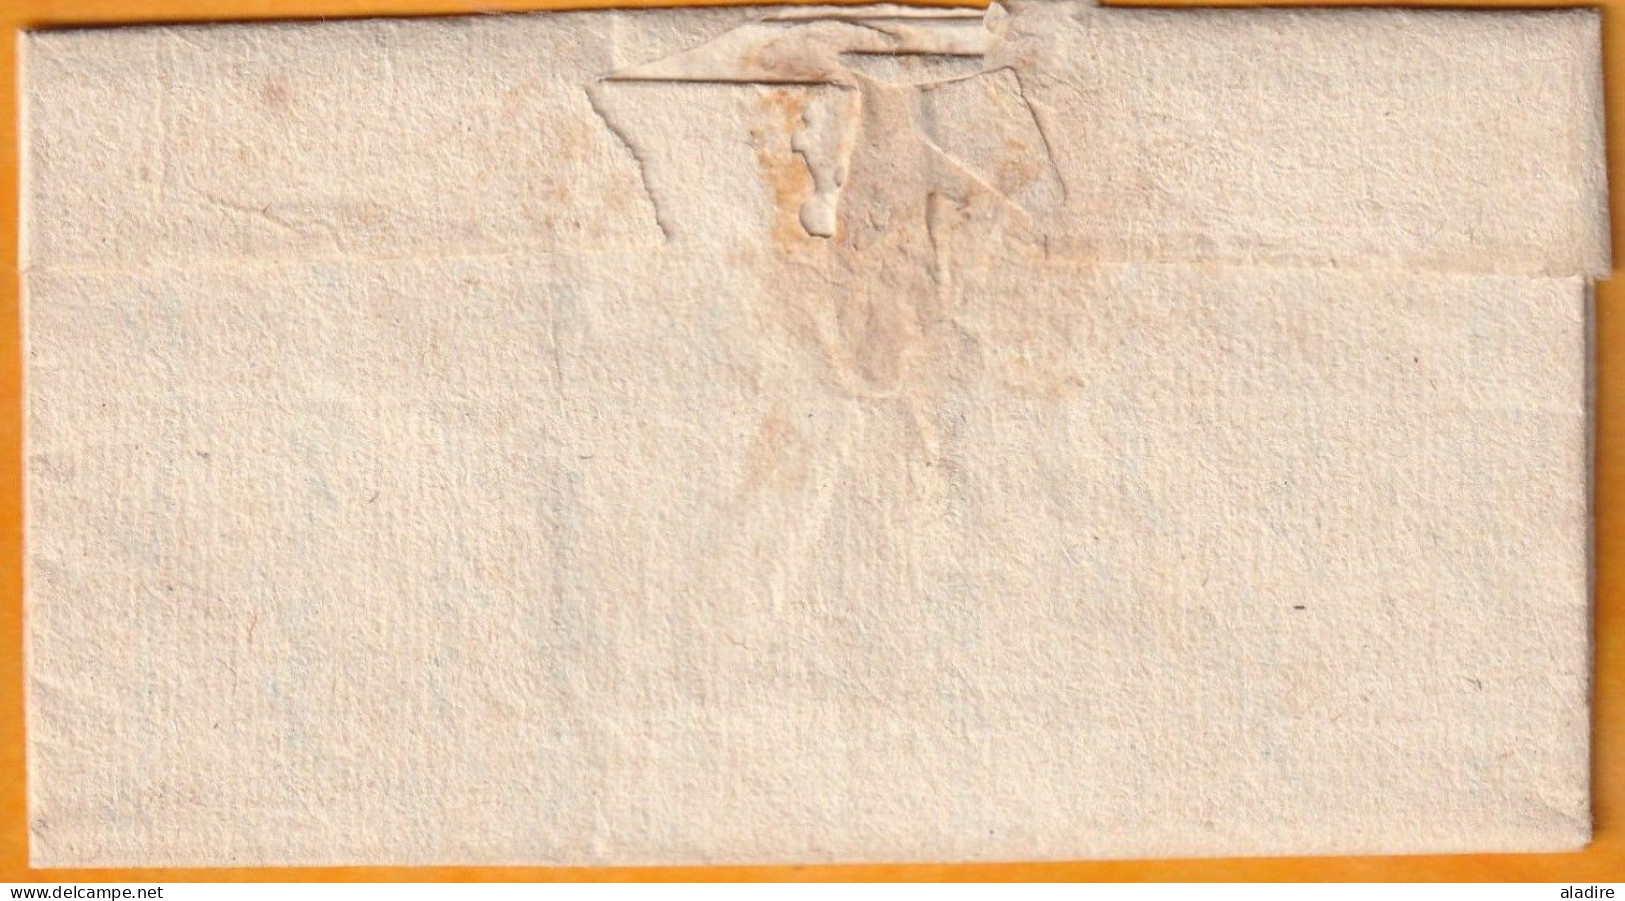 1771 - Marque Postale Manuscrite VILLENEUVE DE BERG, Ardèche Sur Lettre Vers BARJAC, Gard - Taxe 5 - 1701-1800: Précurseurs XVIII